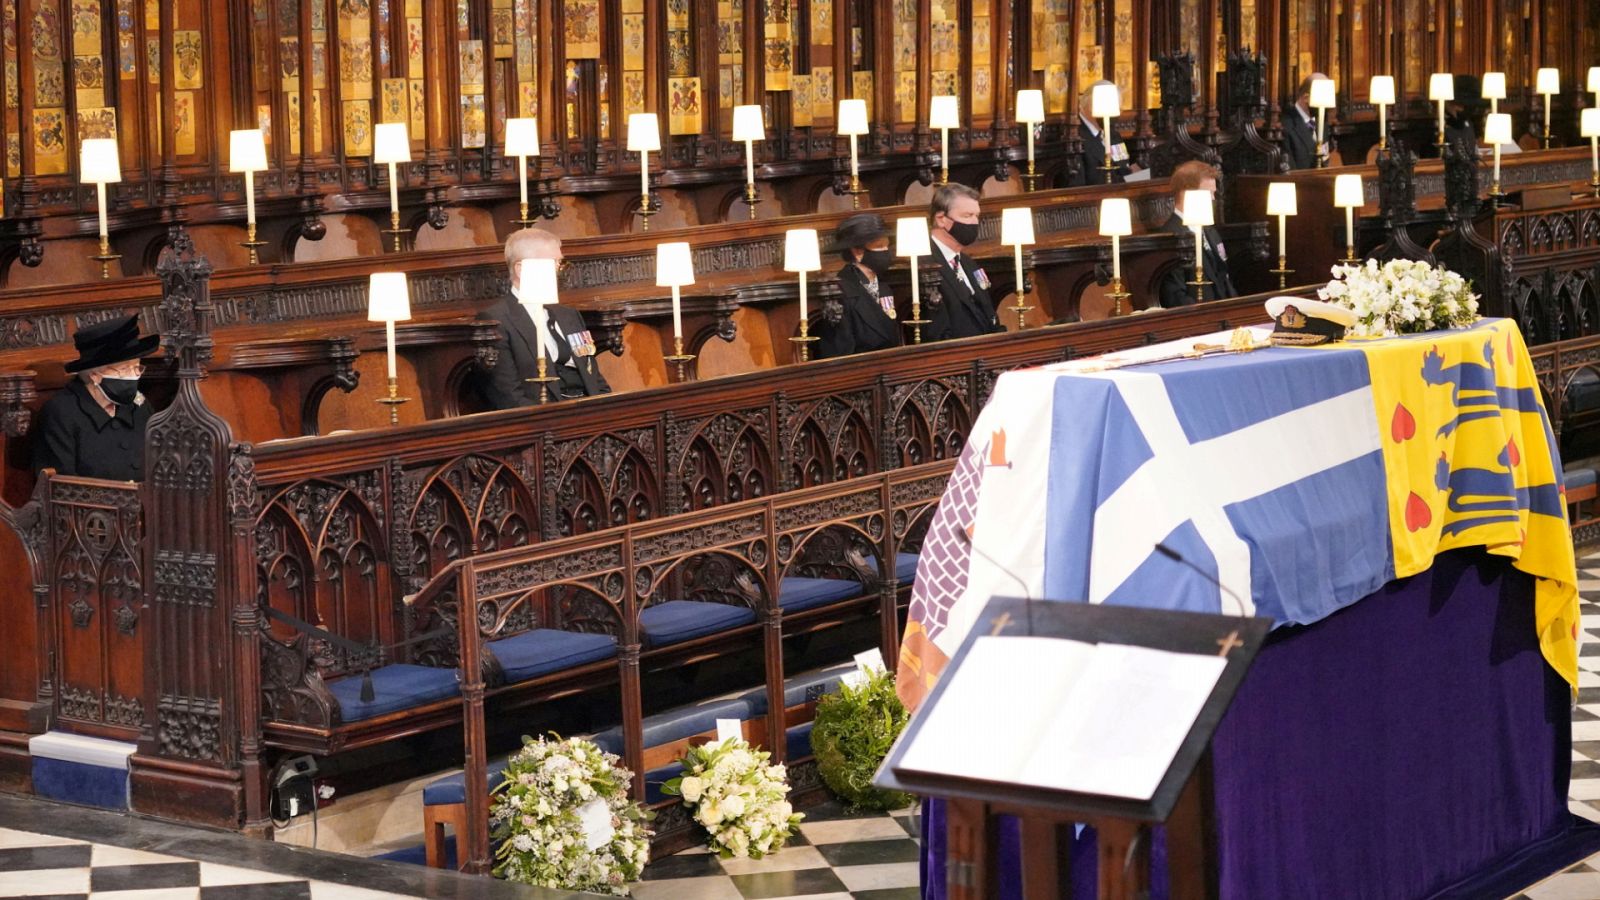 Especial informativo - Funeral del Duque de Edimburgo